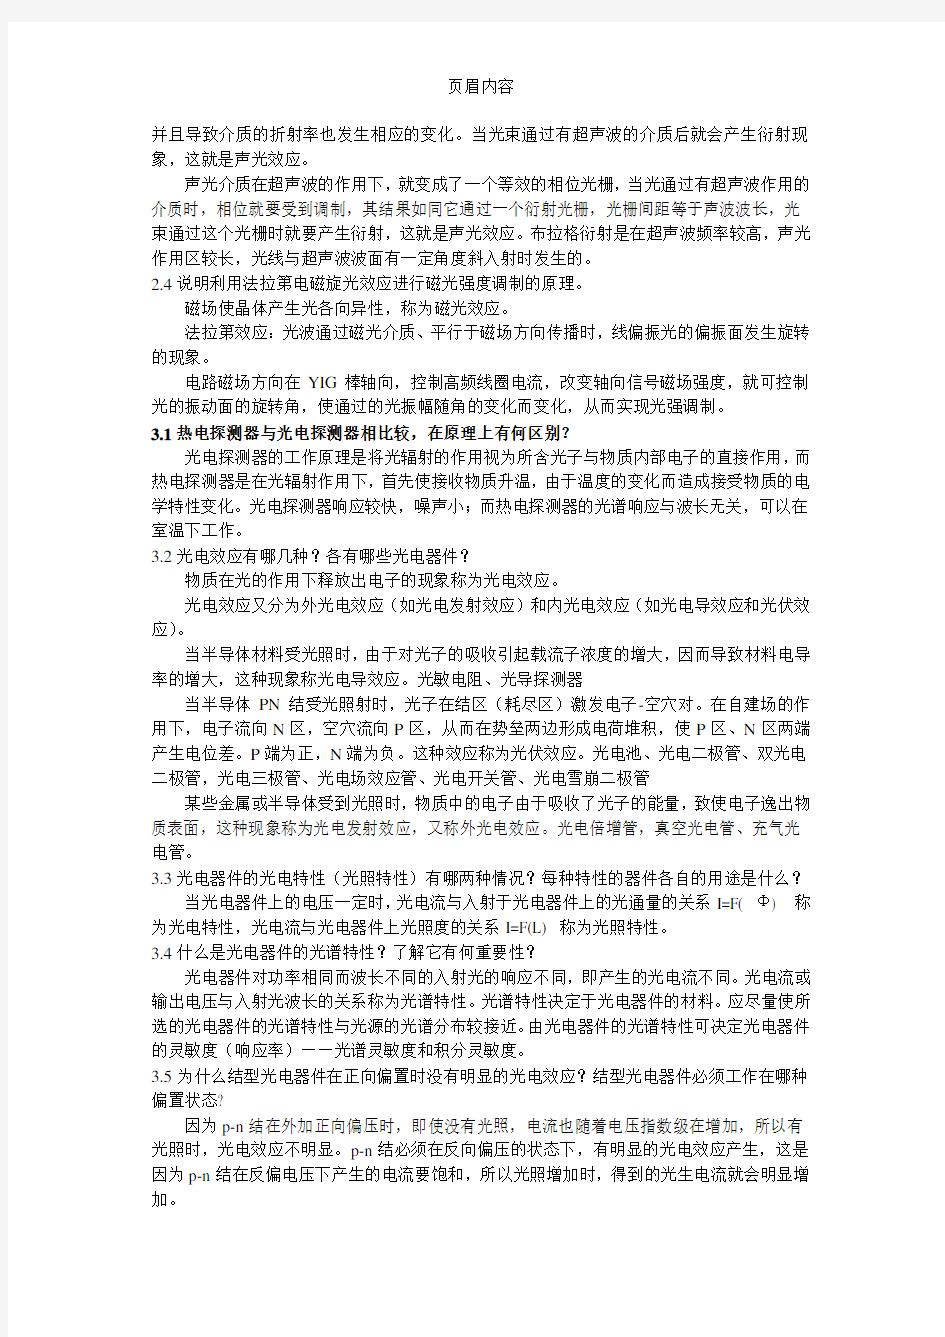 张永林第二版《光电子技术》课后习题答案解析.doc